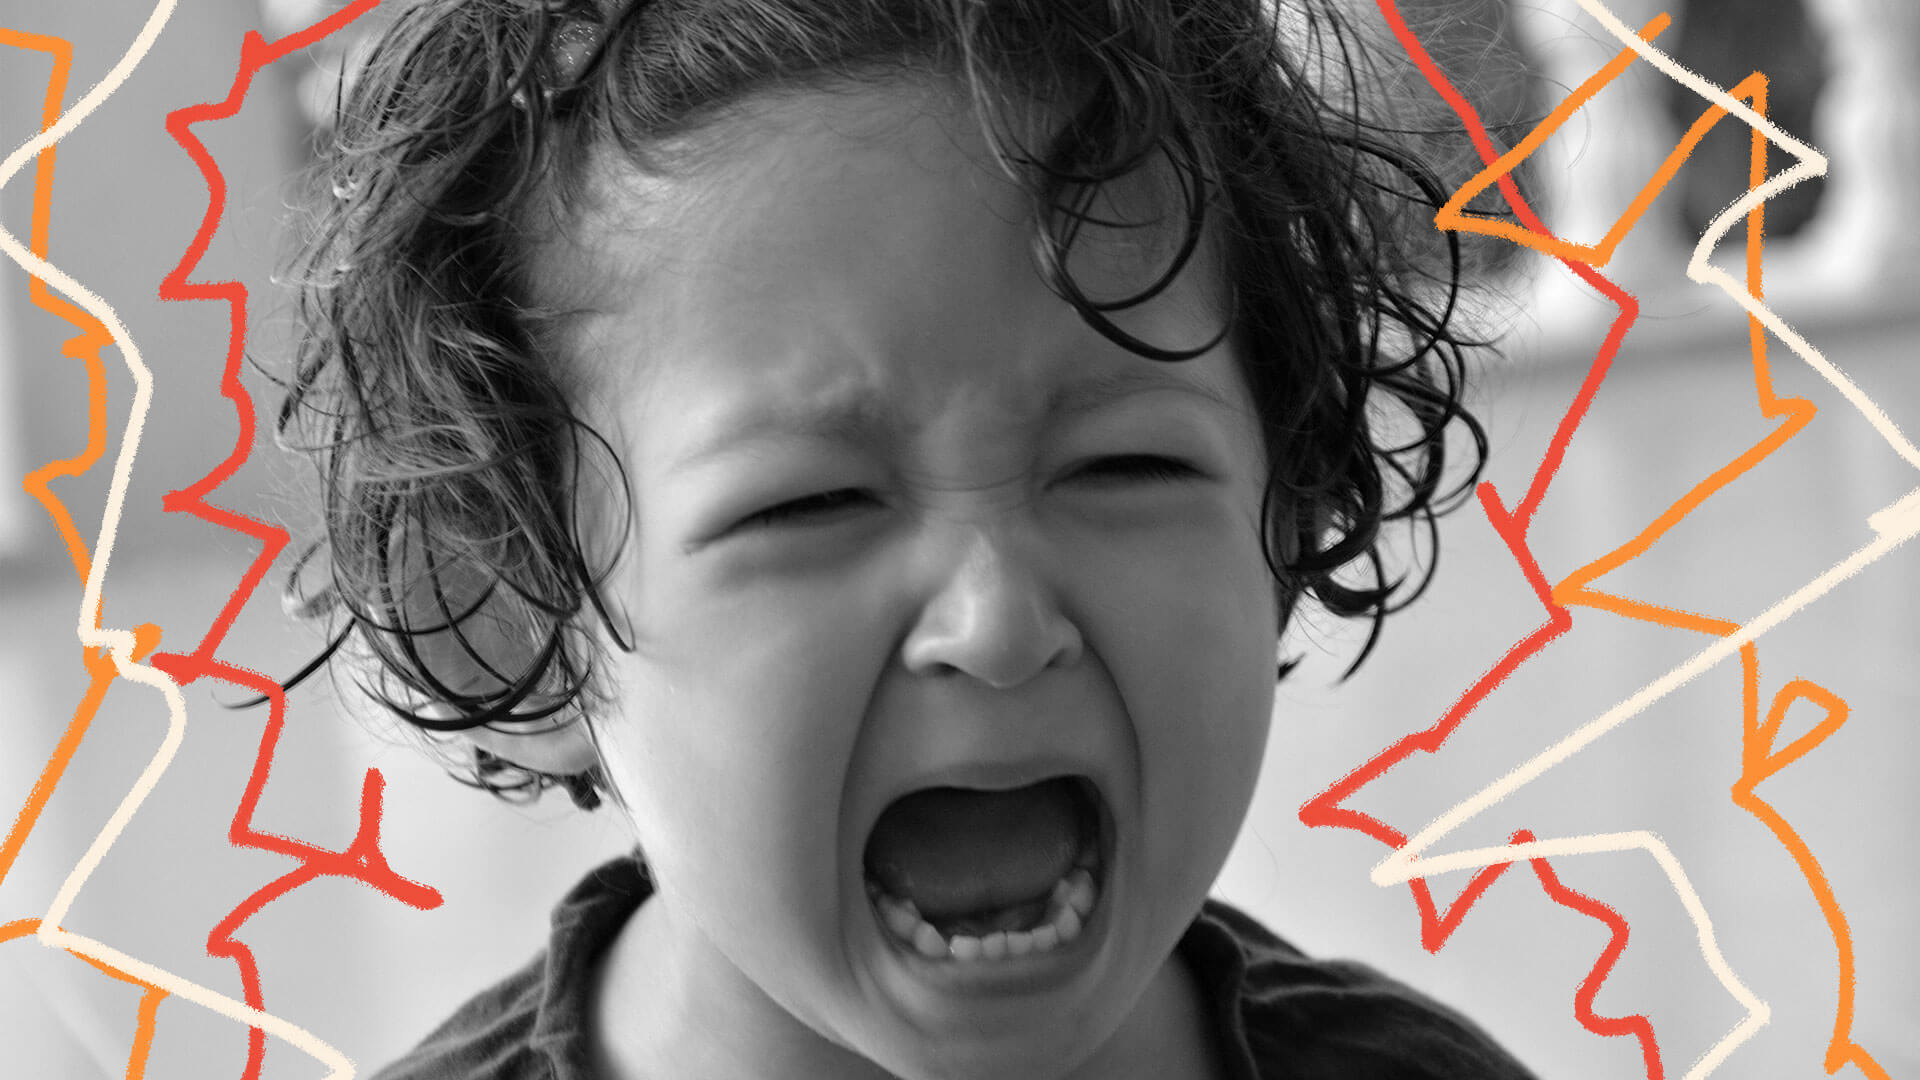 Foto em preto e branco mostra close de um menino chorando com a boca aberta.